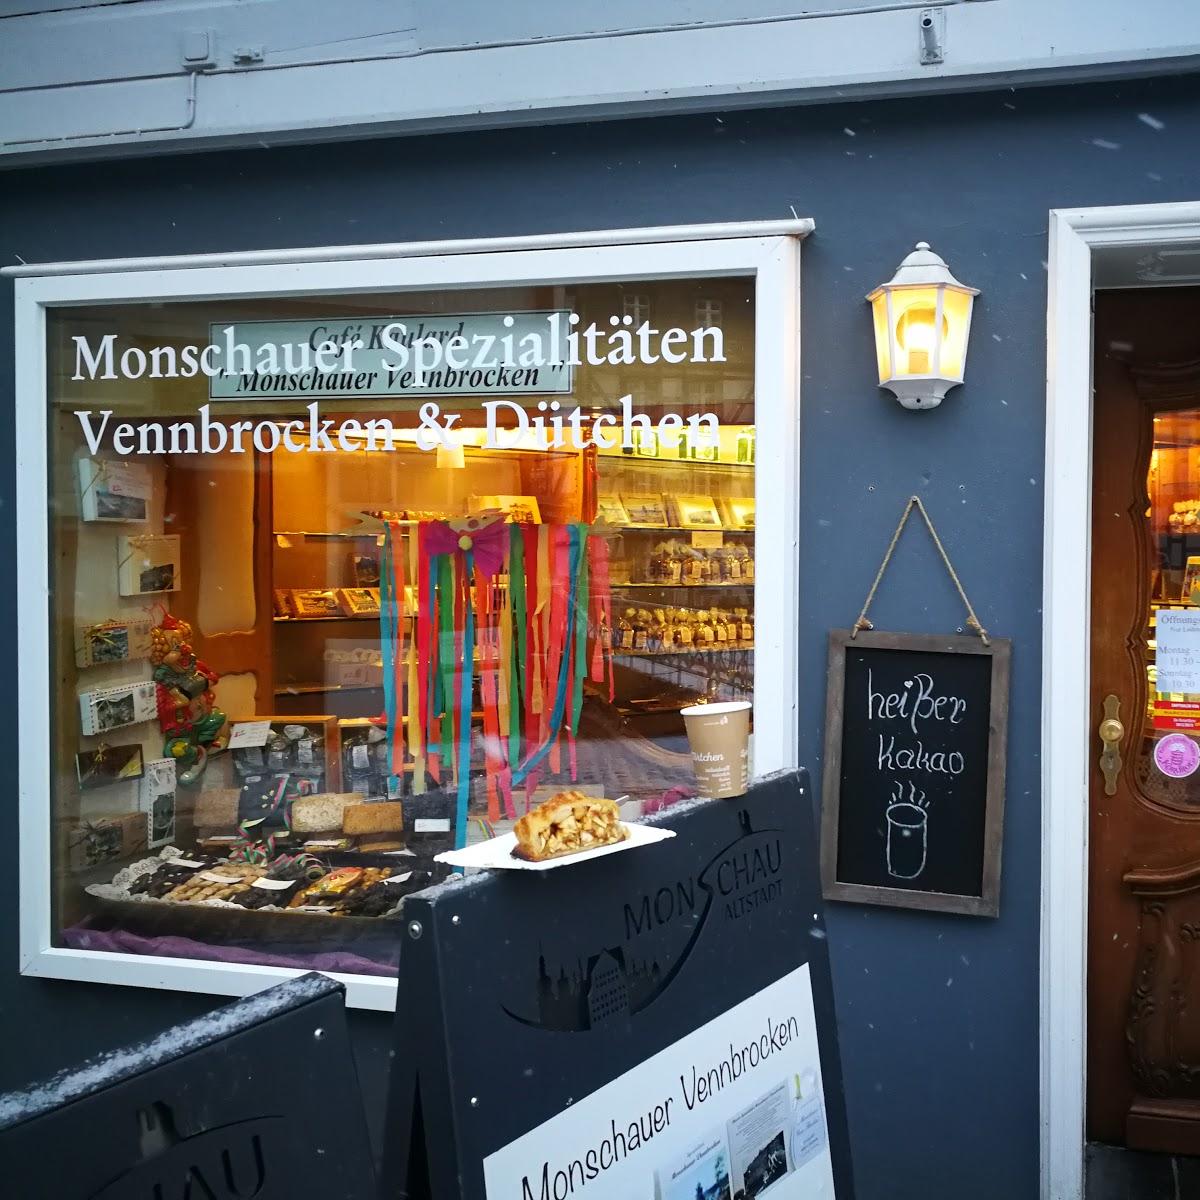 Restaurant "Café Kaulard  er Vennbrock " in Monschau